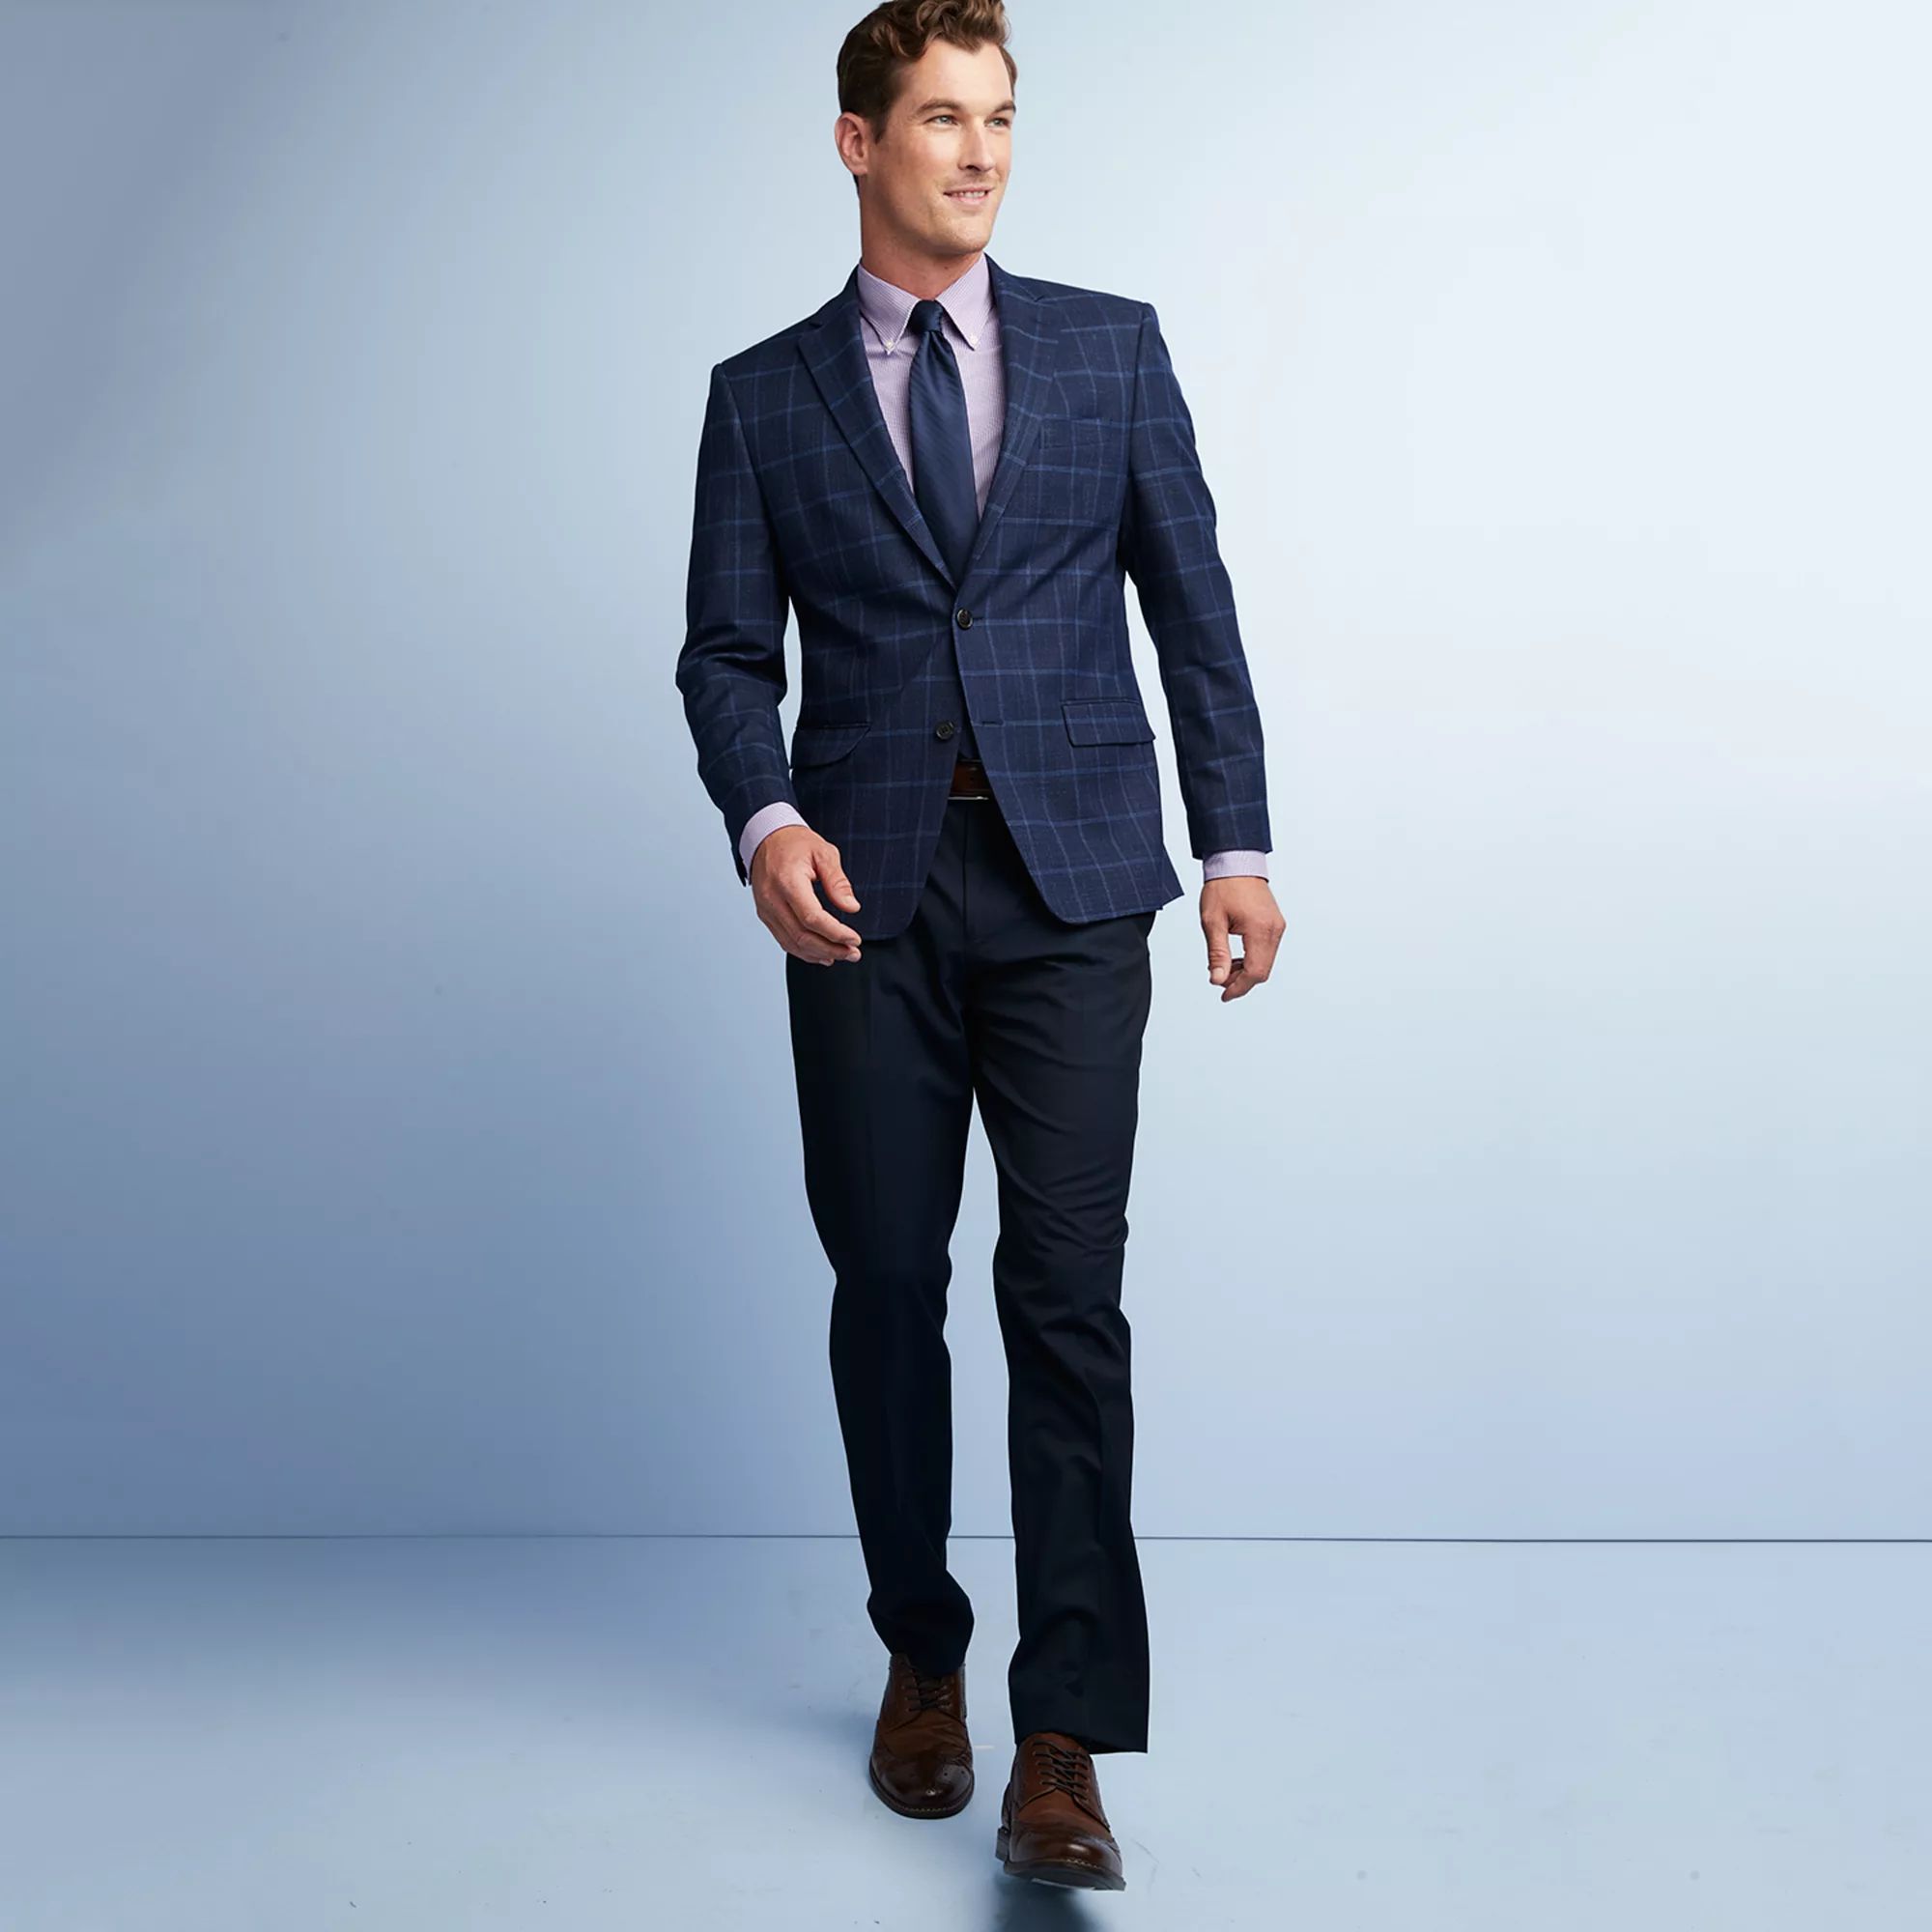 Men's Suit Separates | Kohl's